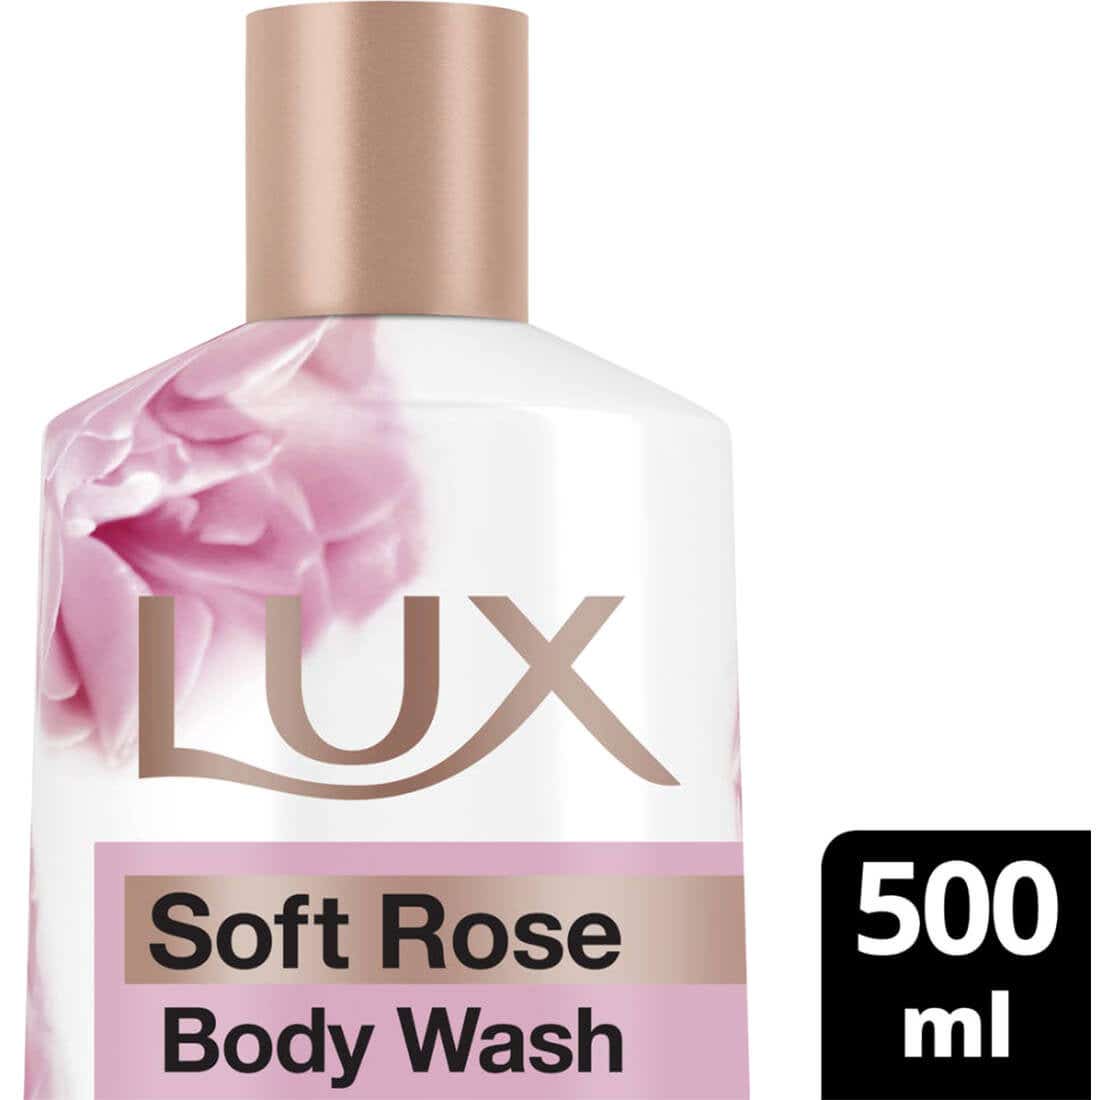 لوكس سائل استحمام الورد الناعم 500مل